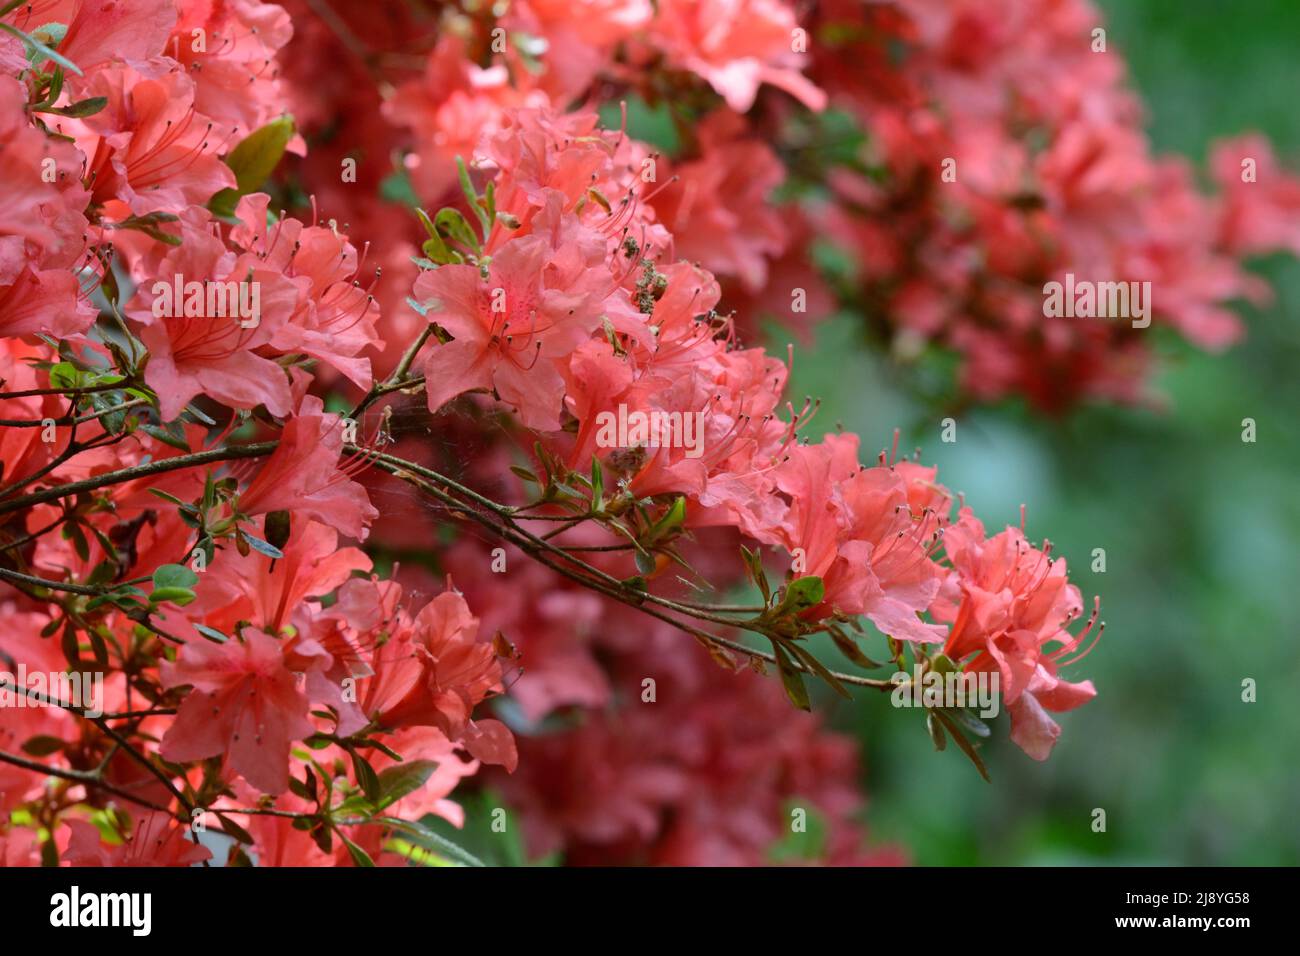 Rhododendron Molle Chinese Azalia shrub Stock Photo